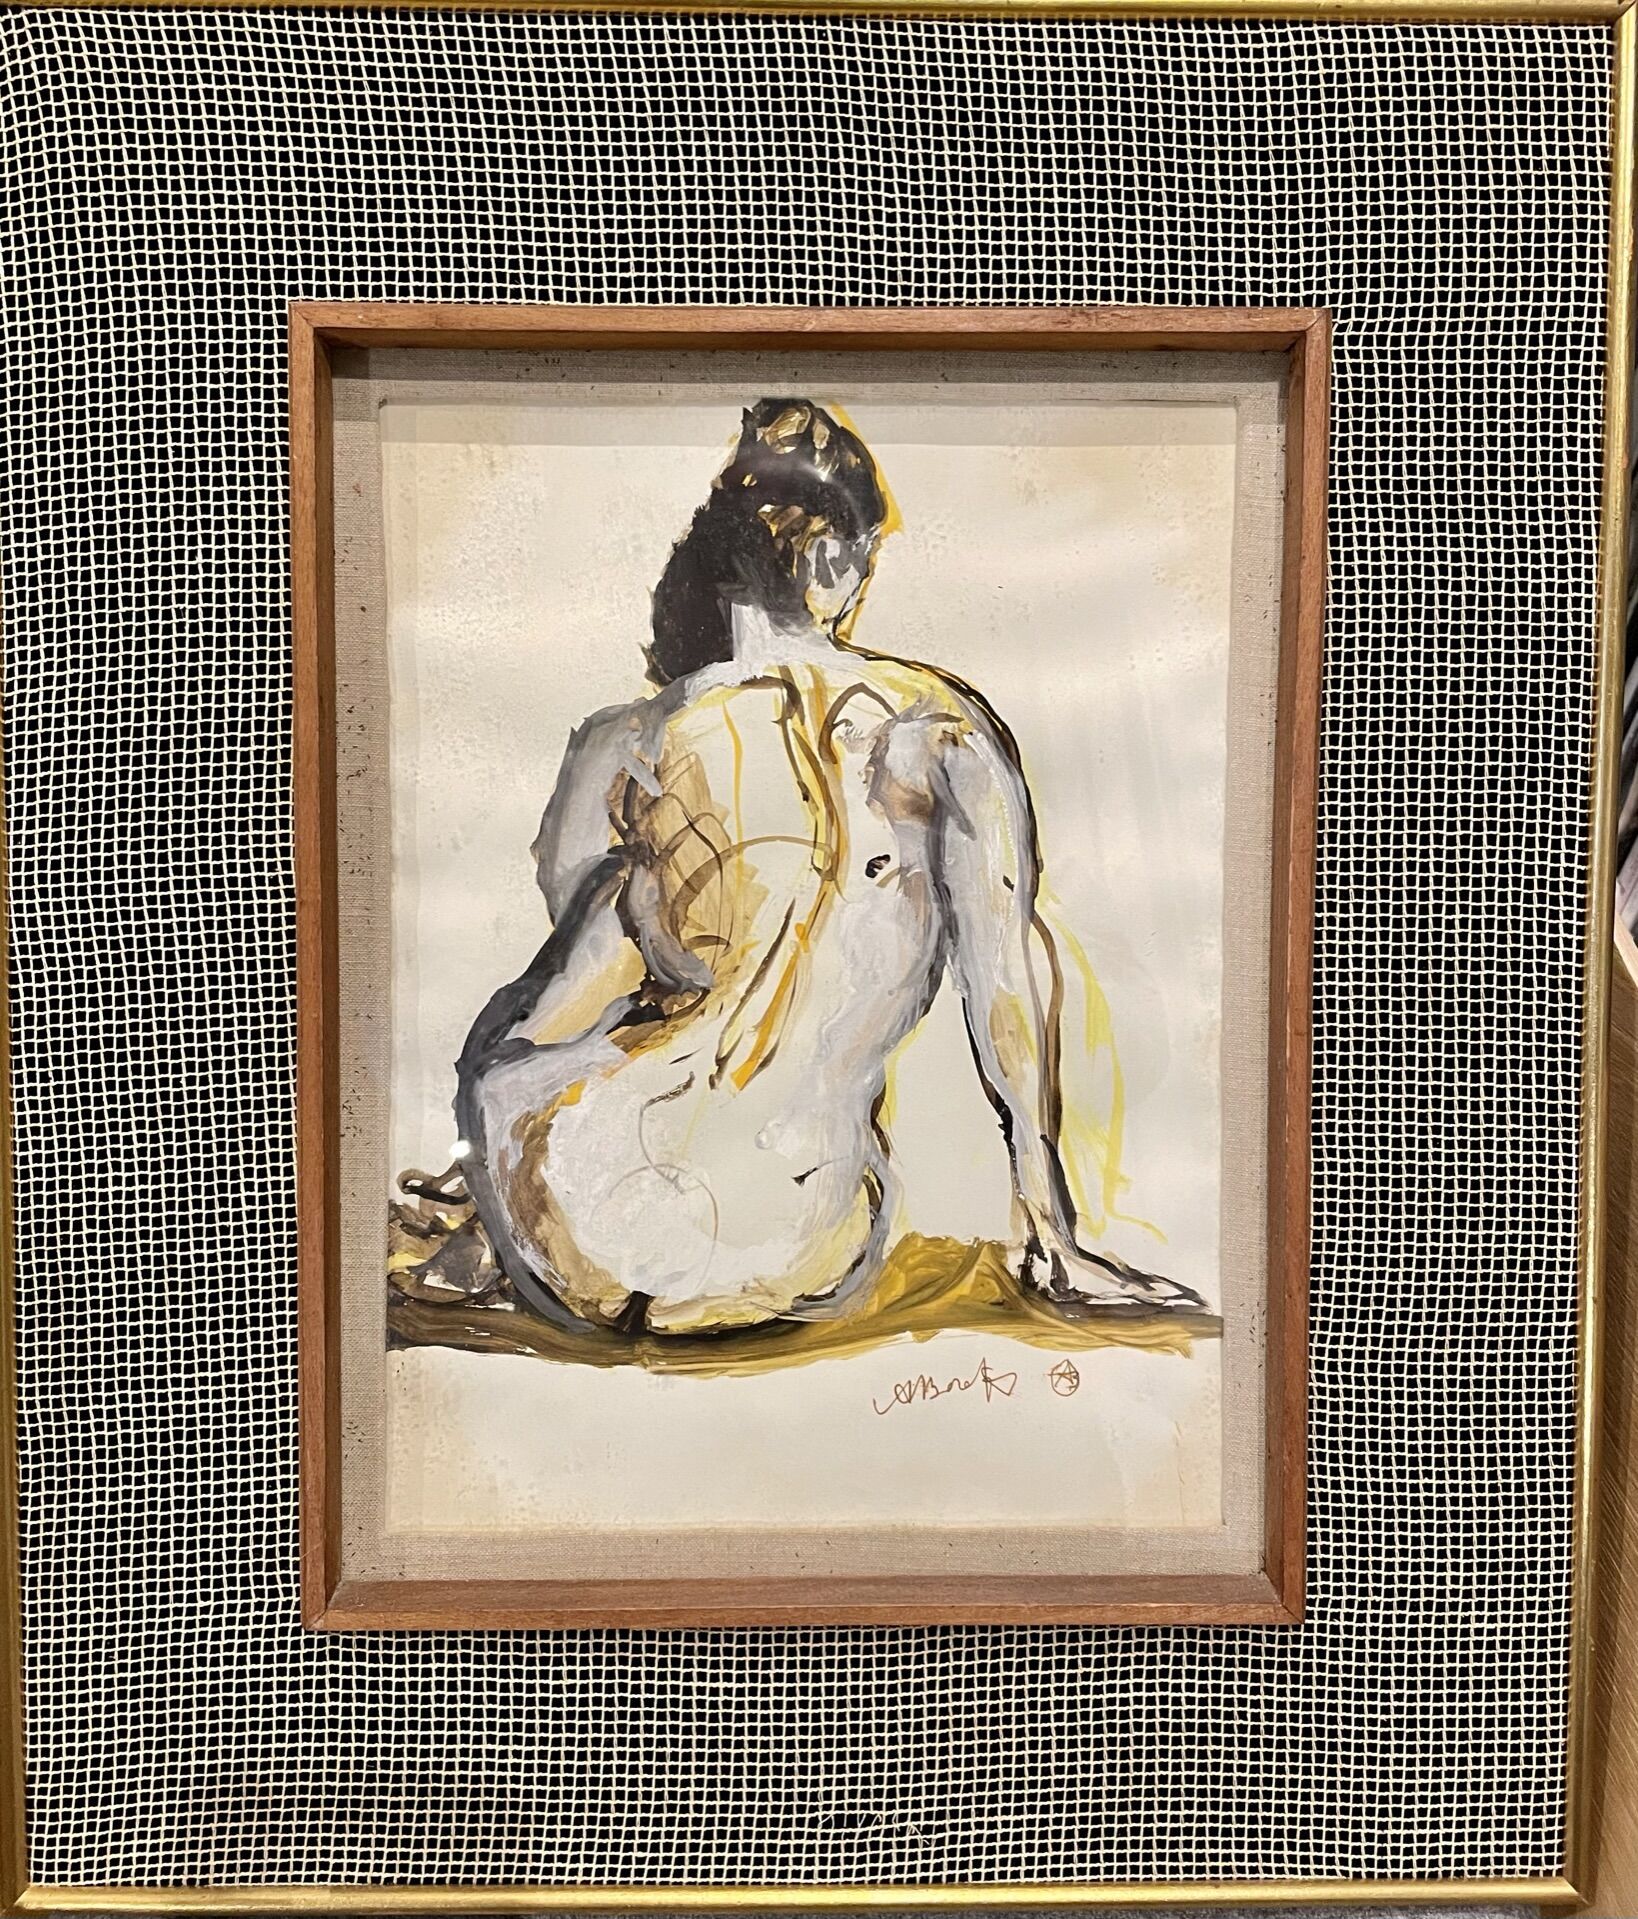 Null 阿夫拉姆-巴拉茨（20世纪），共有四件作品。

"女性裸体从后面坐着"。

铅笔、钢笔和水粉画。

右下方有签名。

H.31,5 cm - W. 2&hellip;